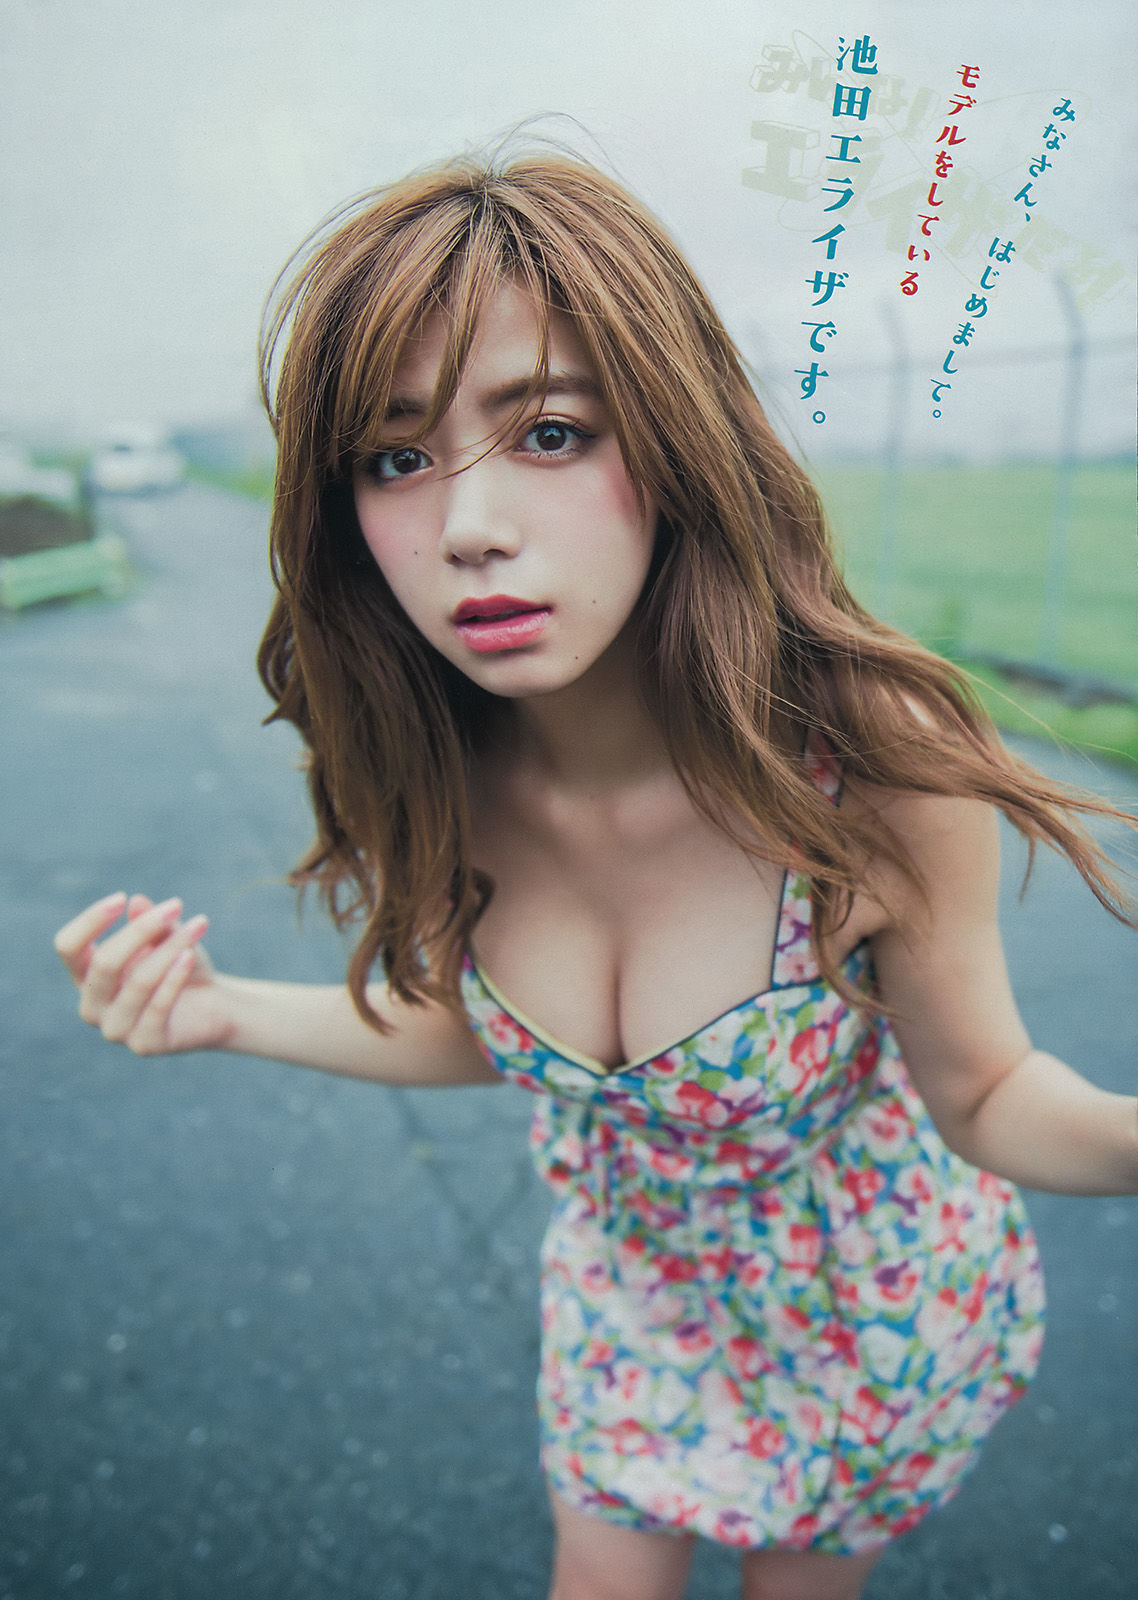 [Young Magazine] Ikeda Erase He 2015 No.41 Photo Magazine Page 2 No.43ed68